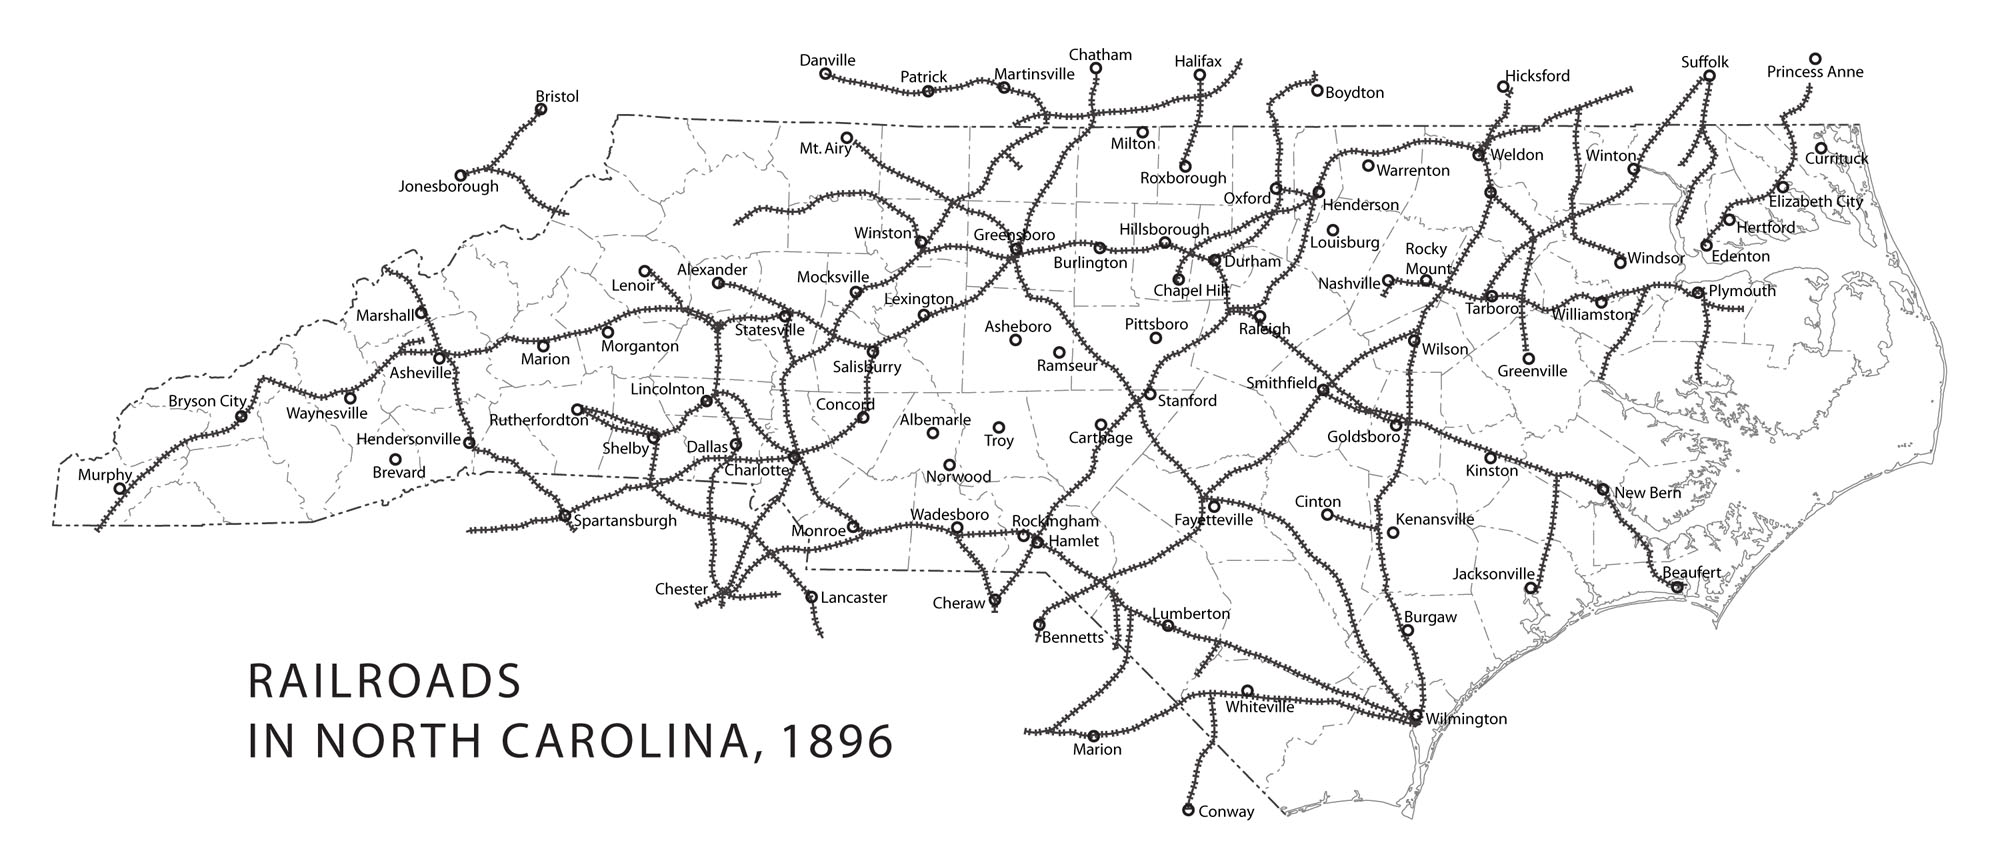 Railroads in North Carolina, 1896